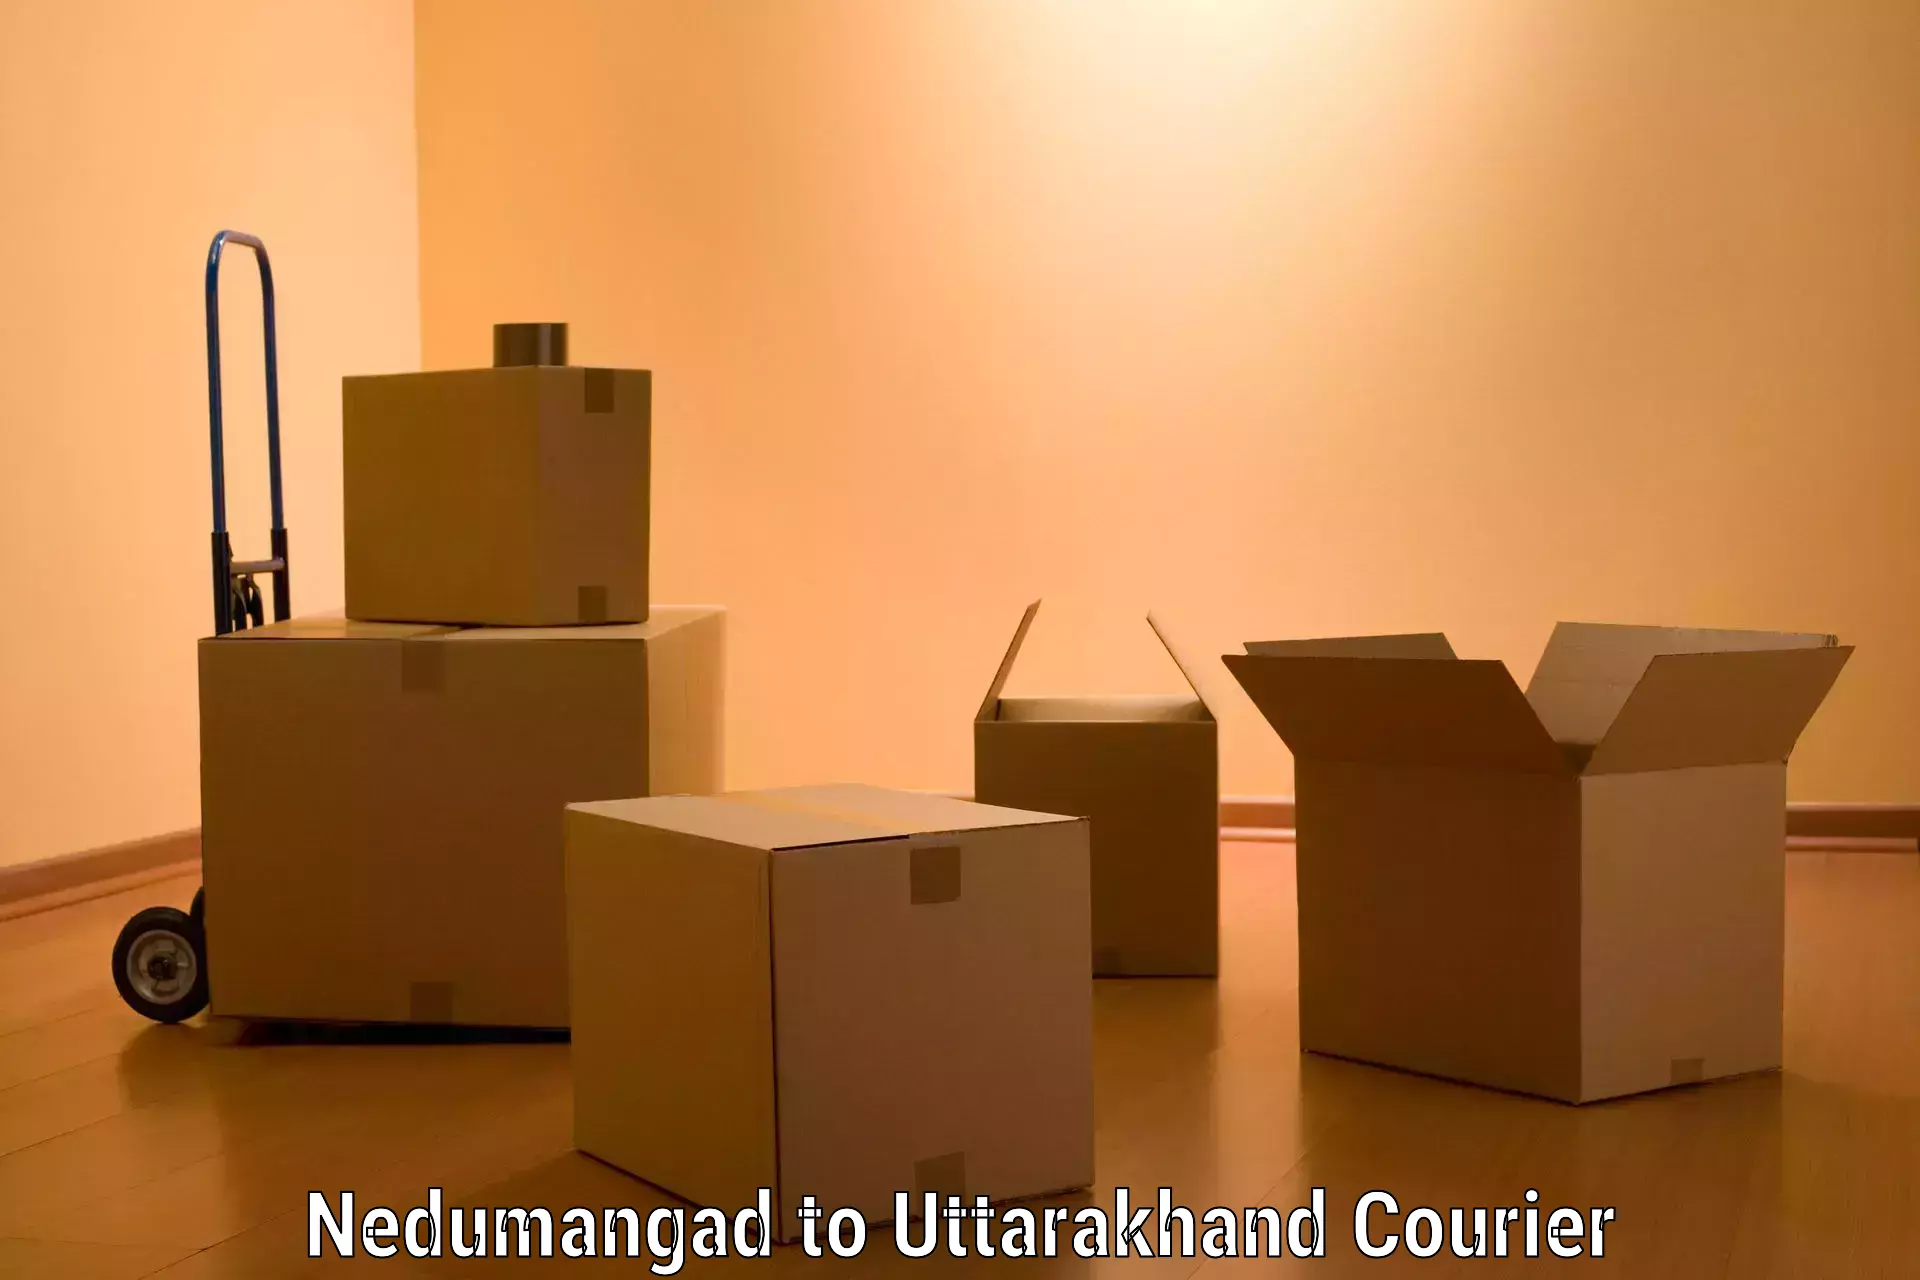 Furniture moving experts Nedumangad to Uttarakhand